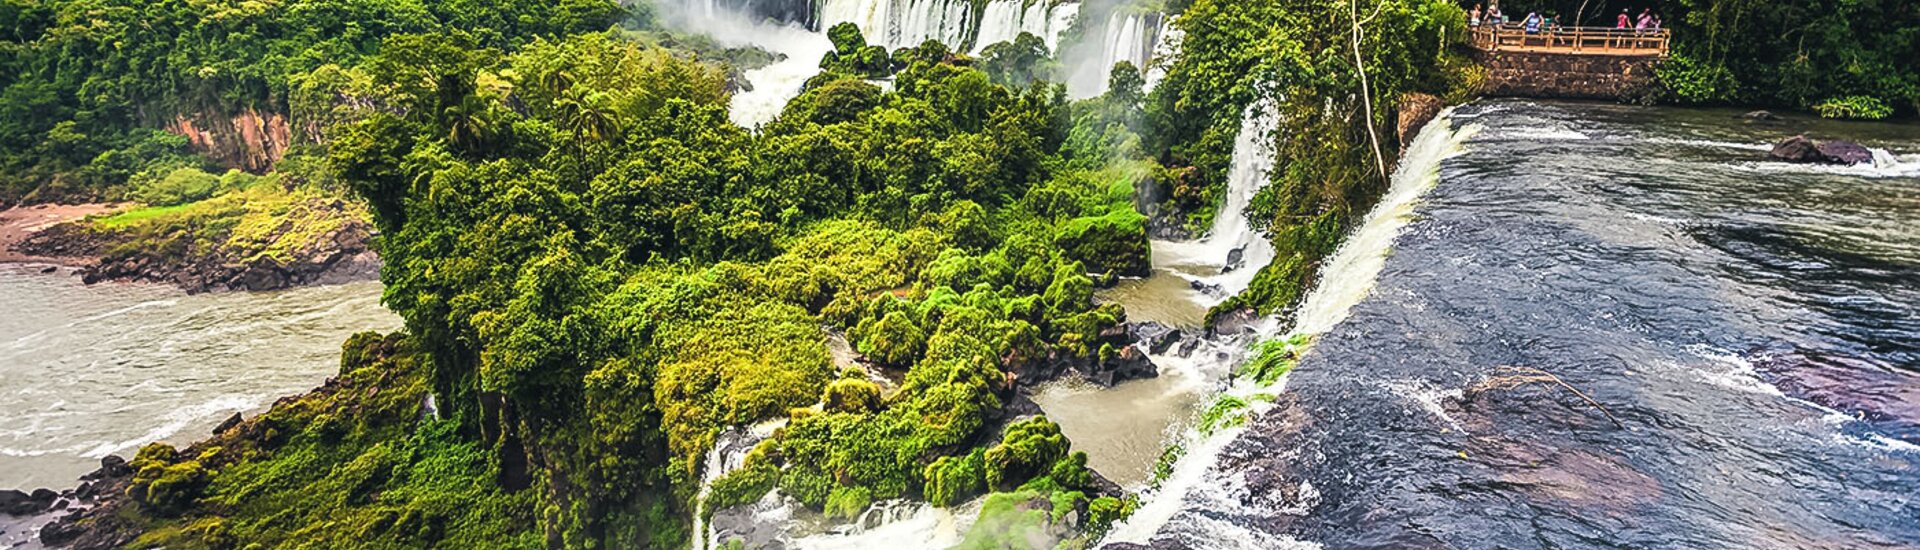 Iguazu Wasserfälle in Argentinien umgeben vom Regenwald